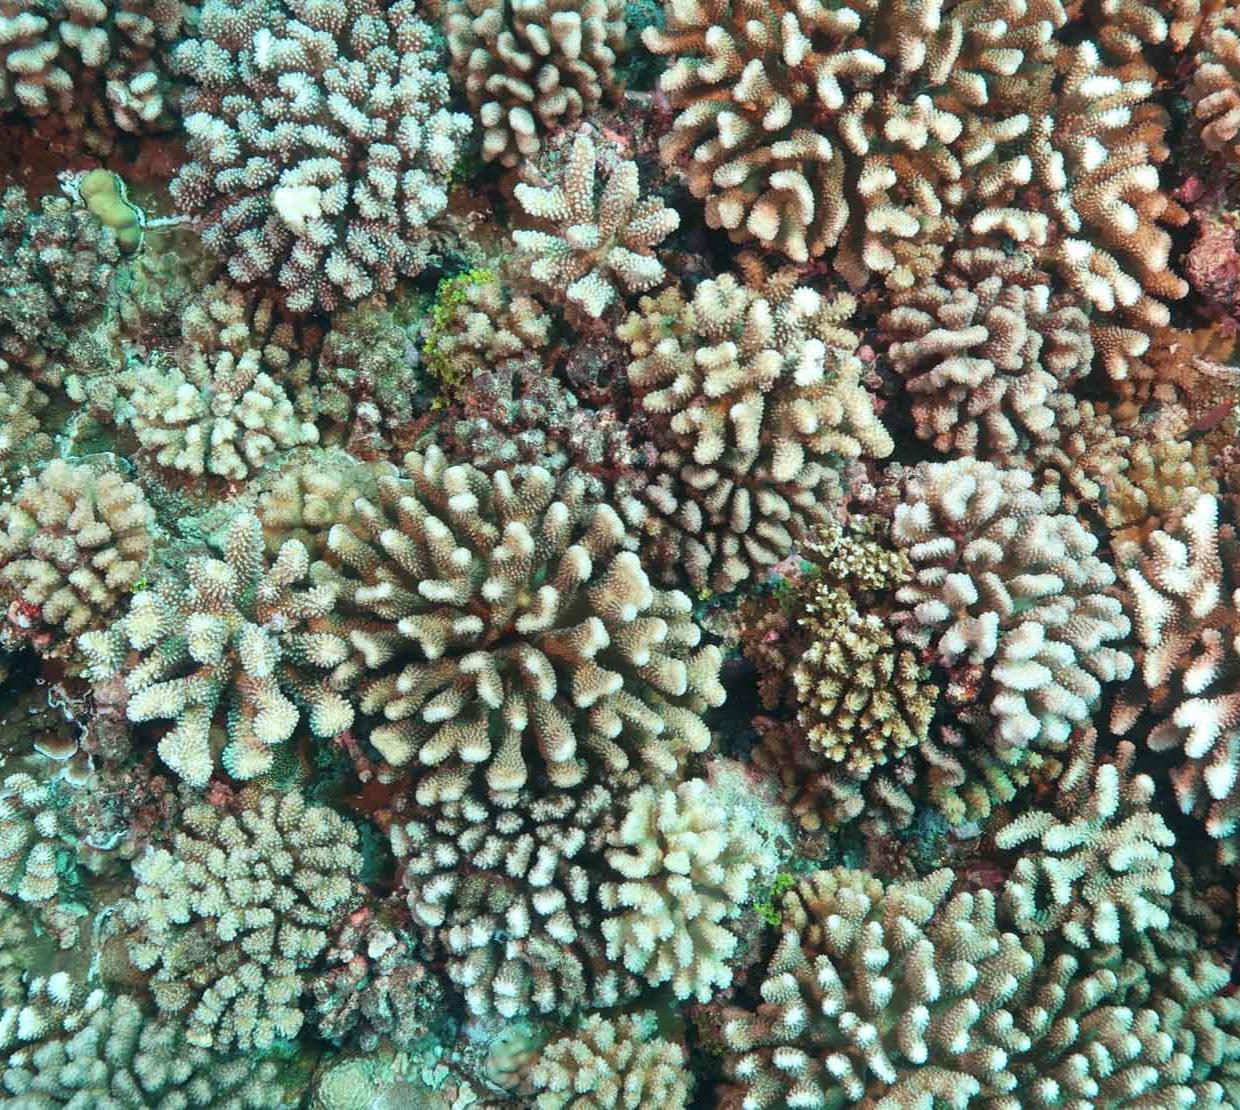 Aerial shot of coral reef.